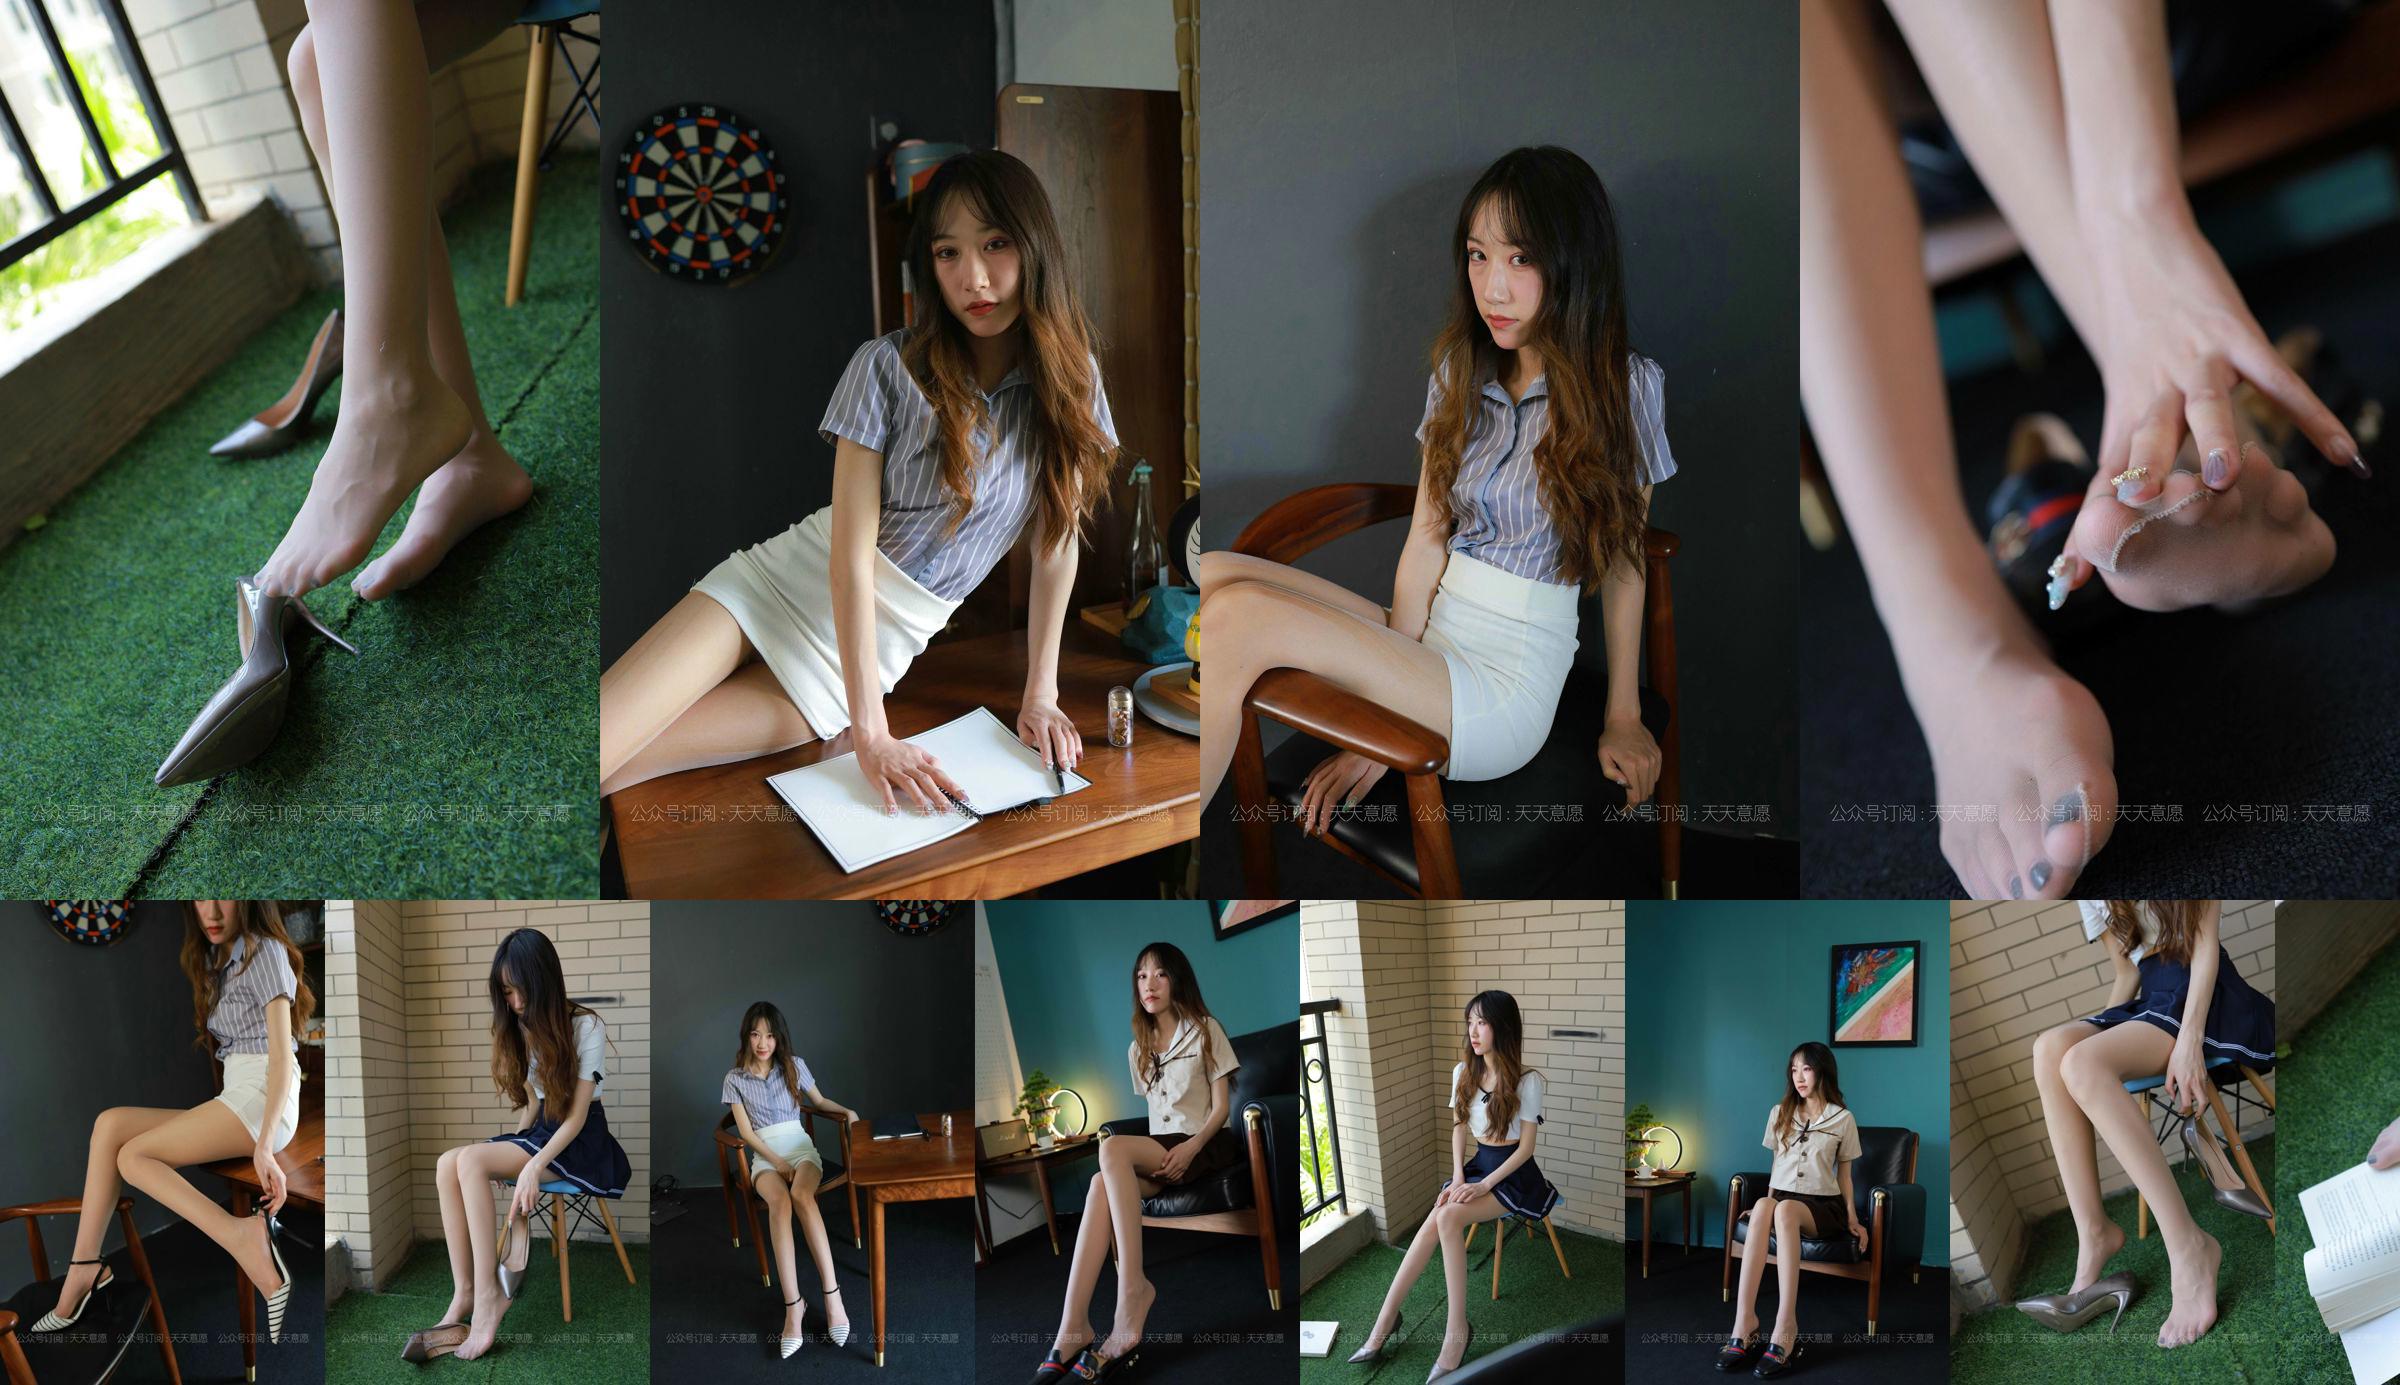 [IESS 奇思 趣向] Người mẫu: Yiyi "Cô gái có đôi chân dài" No.b76444 Trang 1